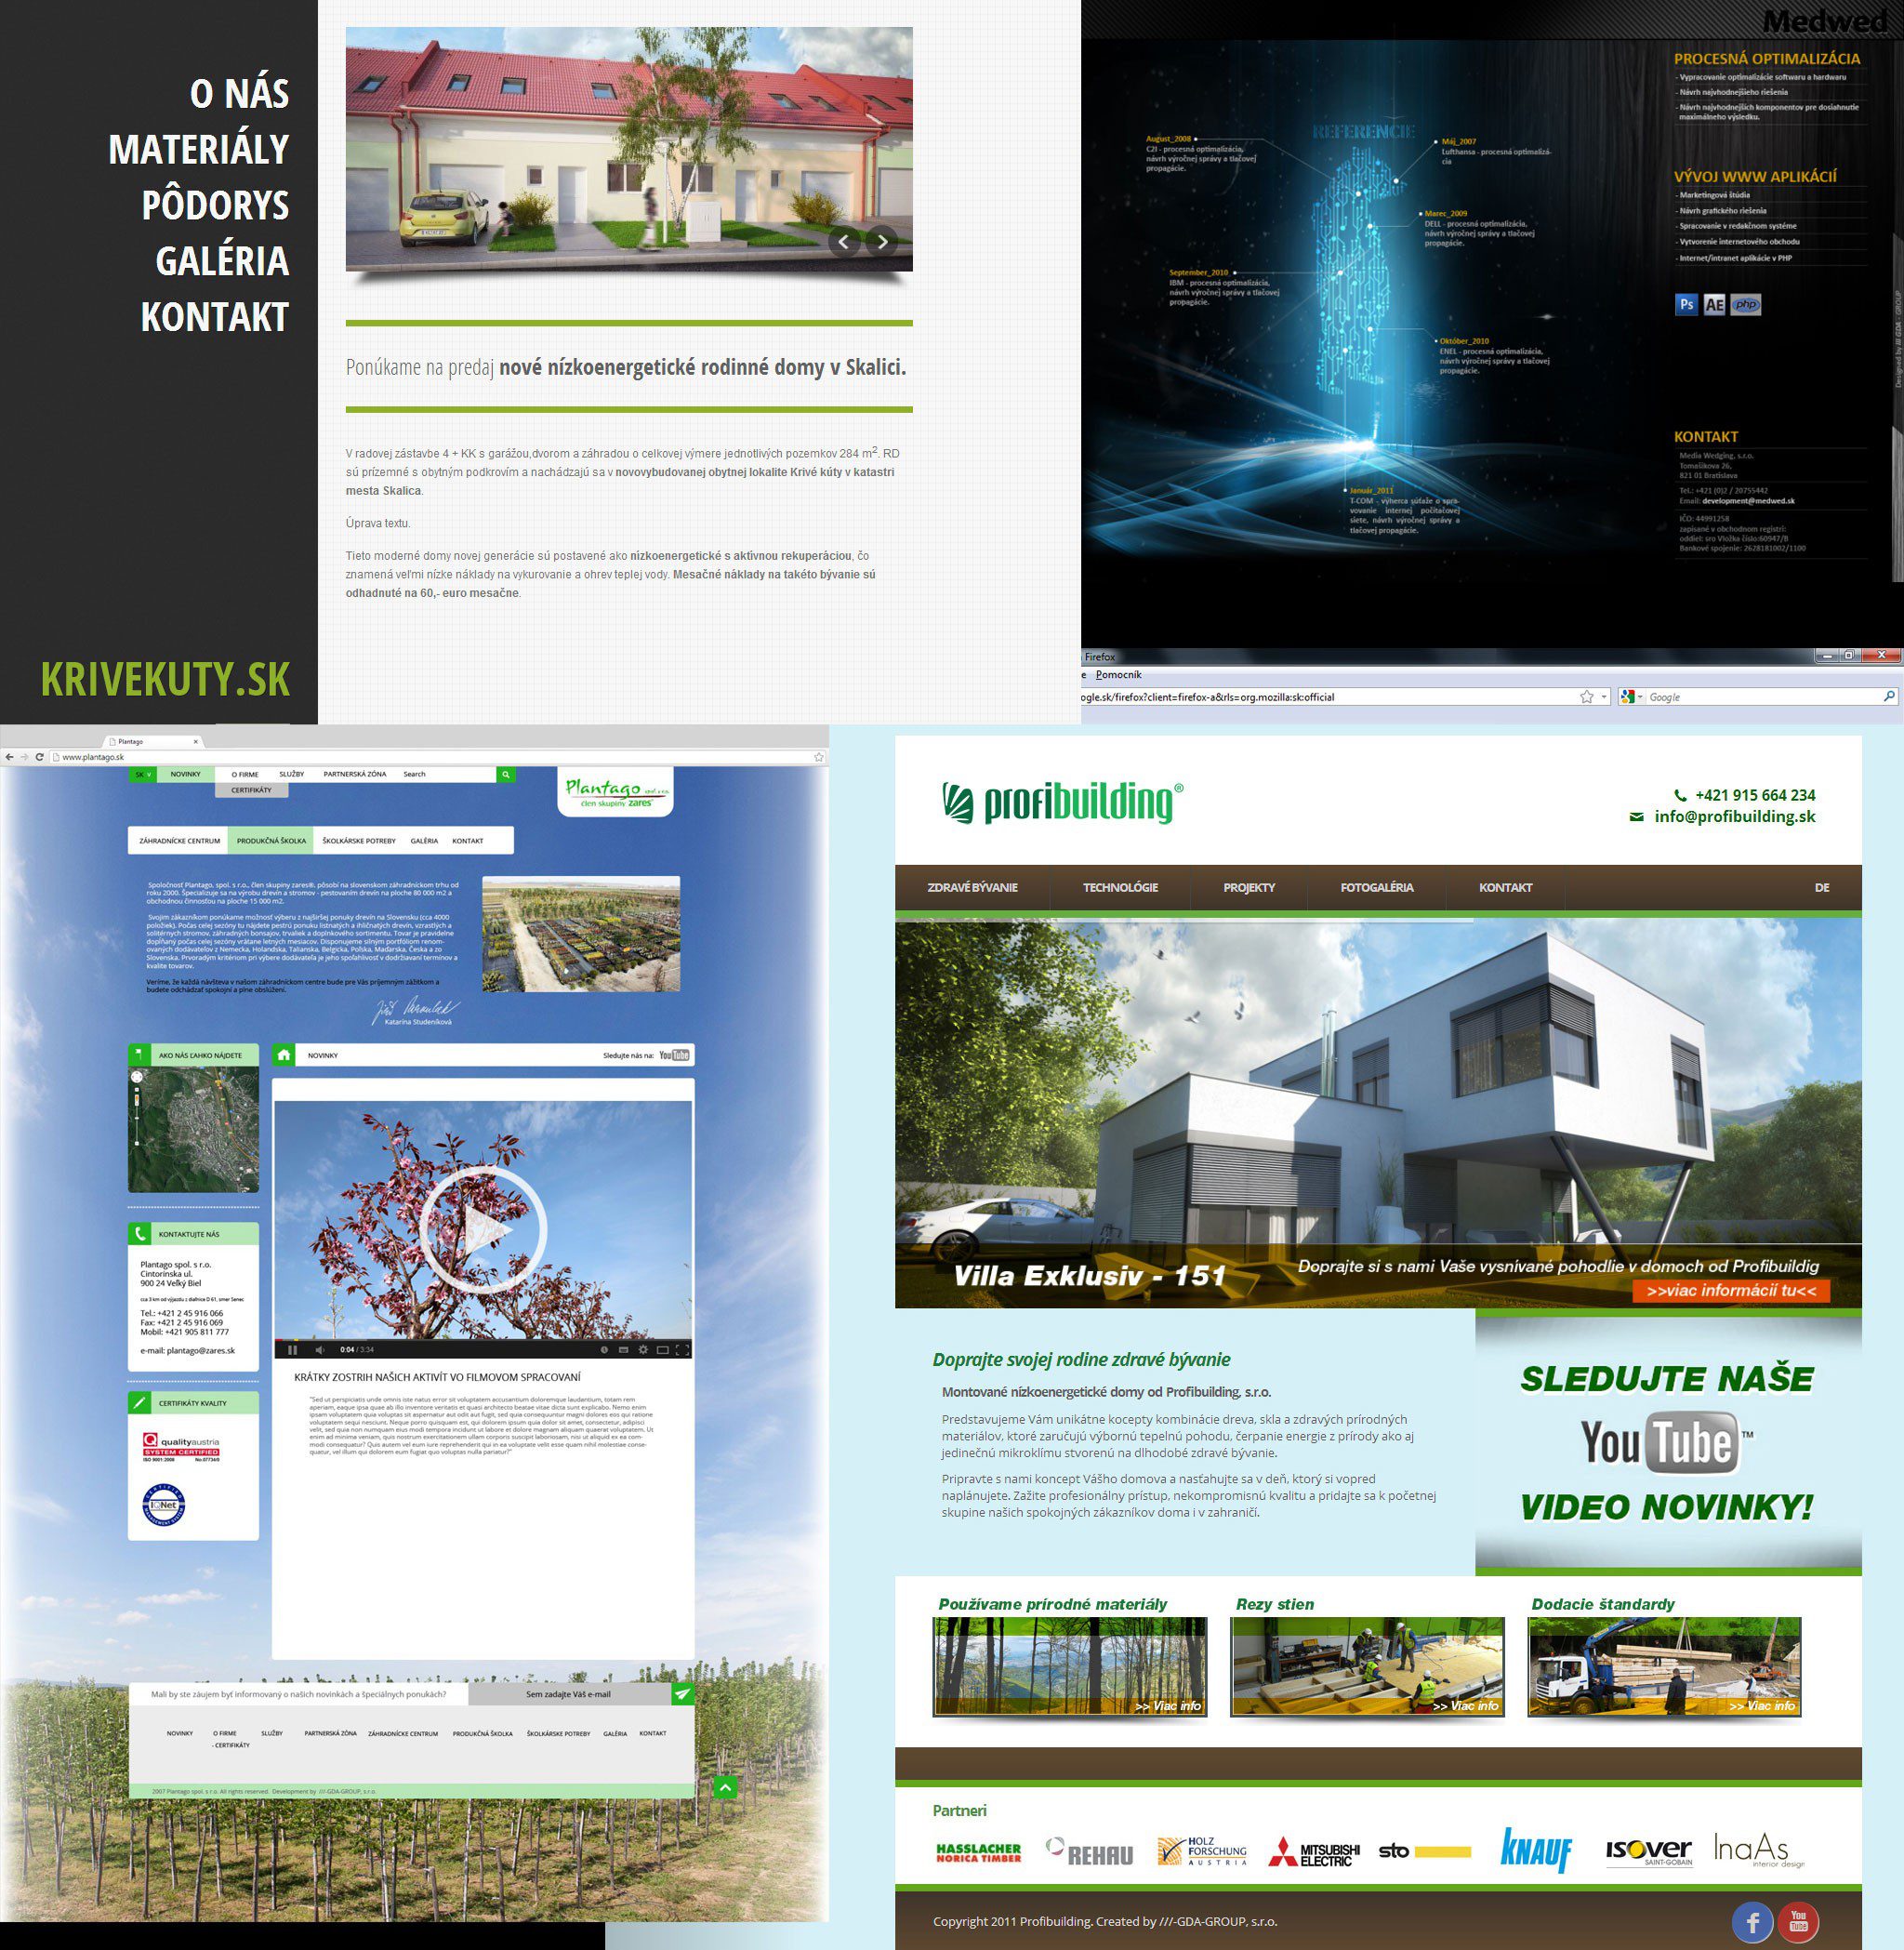 Tvorba webových stránok - KRIVEKUTY, Profibuilding, Plantago, Medwed - Domovská stránka